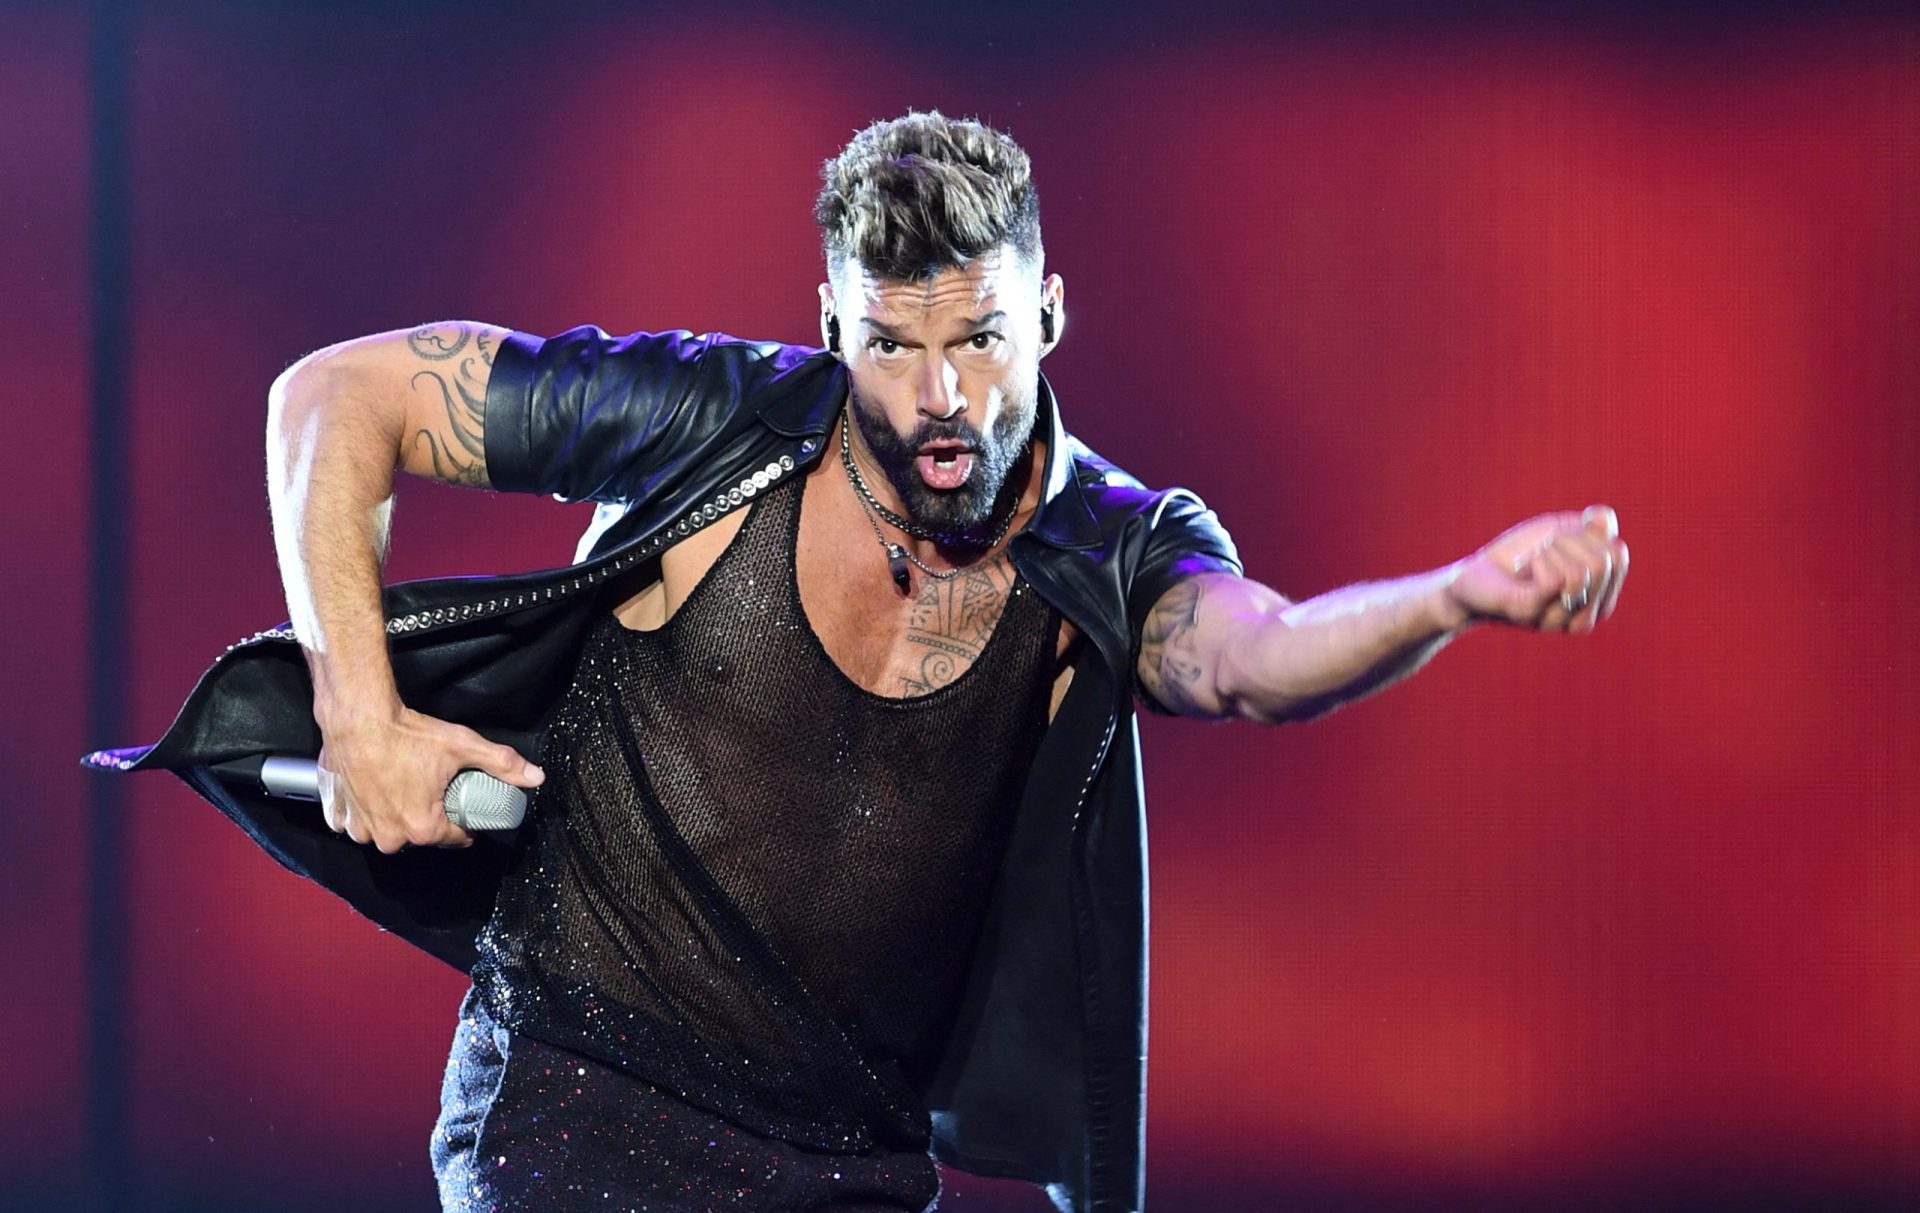 Sobrinho de Ricky Martin acusa o tio de incesto e violência doméstica